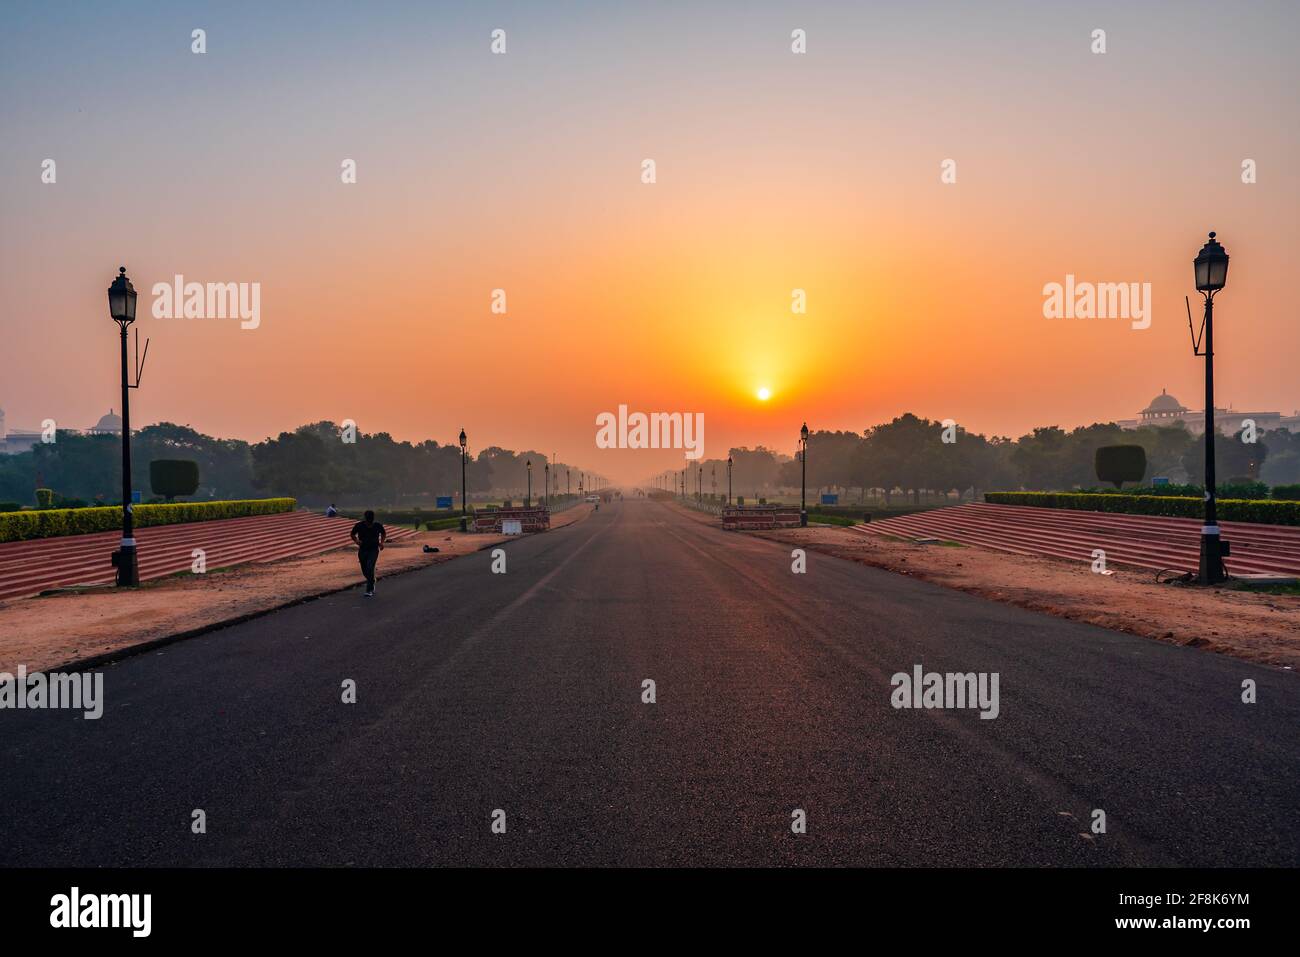 Vista all'alba dal rajpath 'King's Way' è un viale cerimoniale a Nuova Delhi, India che corre da Rashtrapati Bhavan sulla collina Raisina attraverso Vija Foto Stock